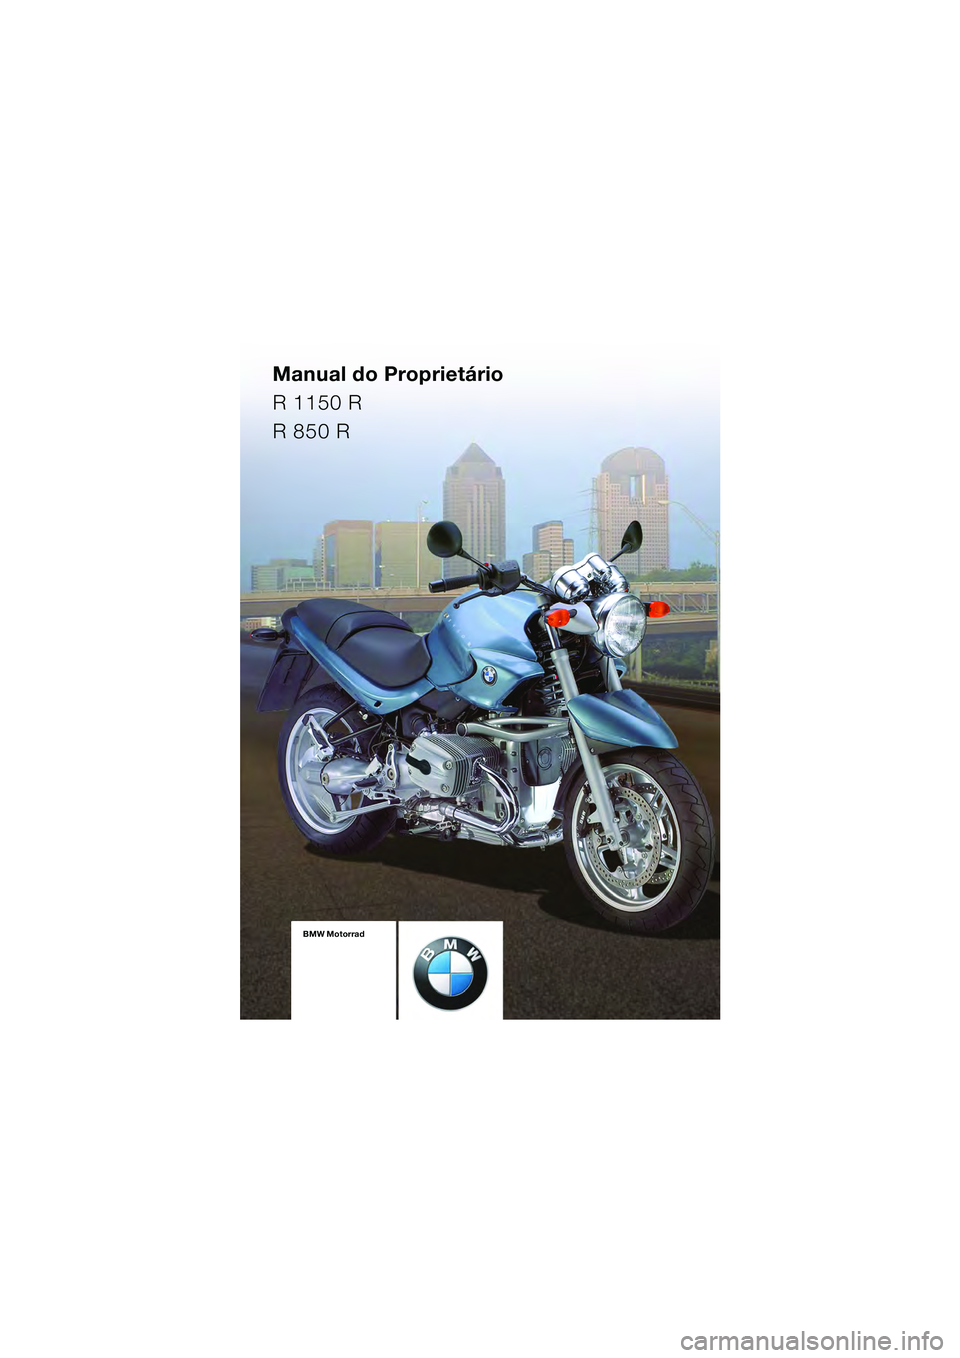 BMW MOTORRAD R 1150 R 2004  Manual do condutor (in Portuguese) Manual do Proprietário
R 1150 R
R 850 R
BMW Motorrad
Documentação 
de bordo
incluido o  
Manual do  
Proprietário e o  
Instruções para  
a manutençãoBMW Motorrad
Documentação 
de bordo
incl